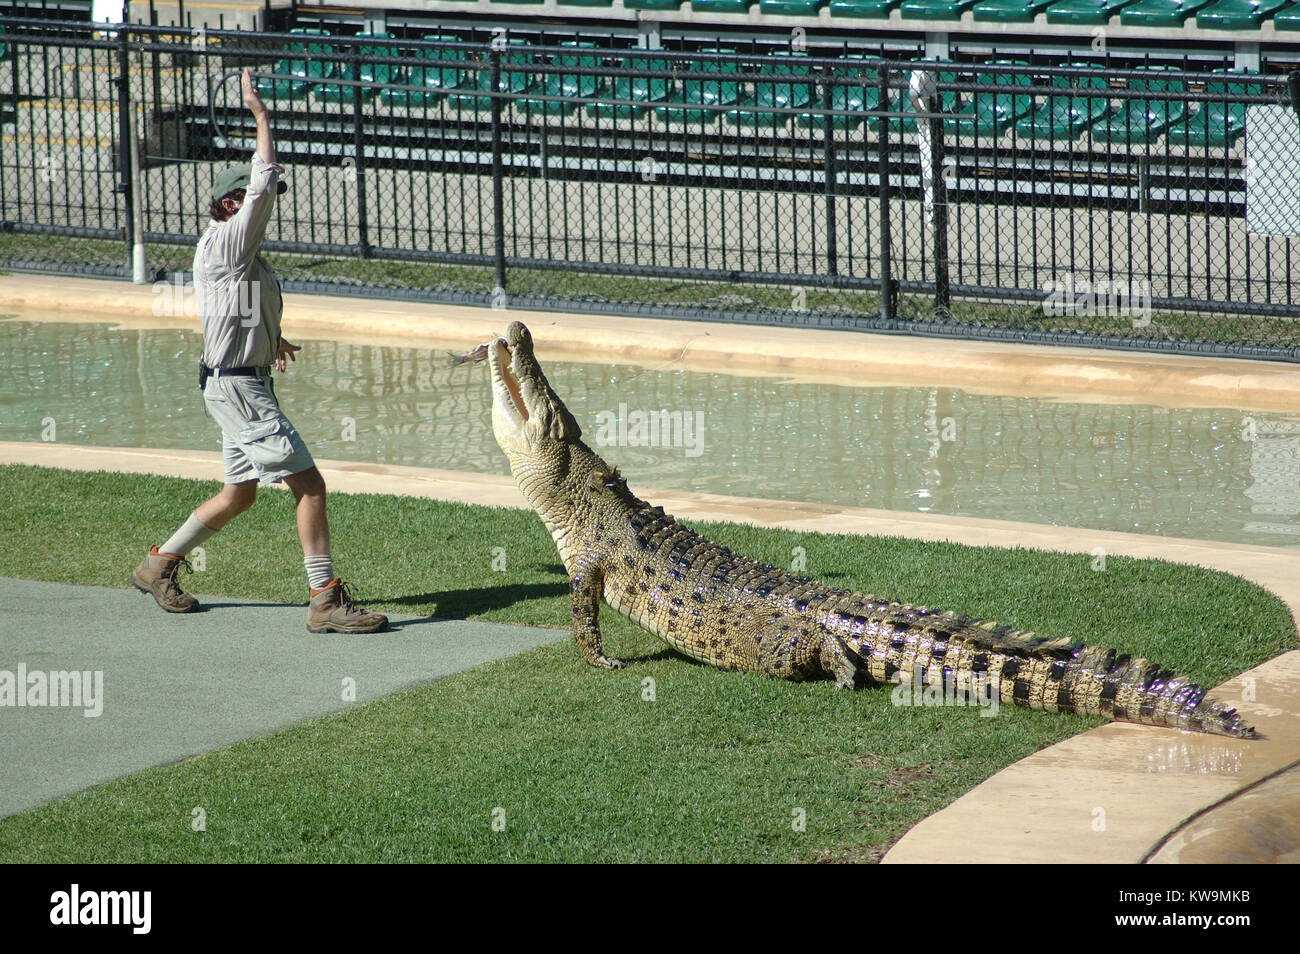 BEERWAH, Australien, 27. Februar, ein Wächter an den Australia Zoo Feeds ein Erwachsener Australier Süßwasser Krokodil, Crocodylus johnstoni, am 27. Februar 2010, in Beerwah, Australien. Stockfoto